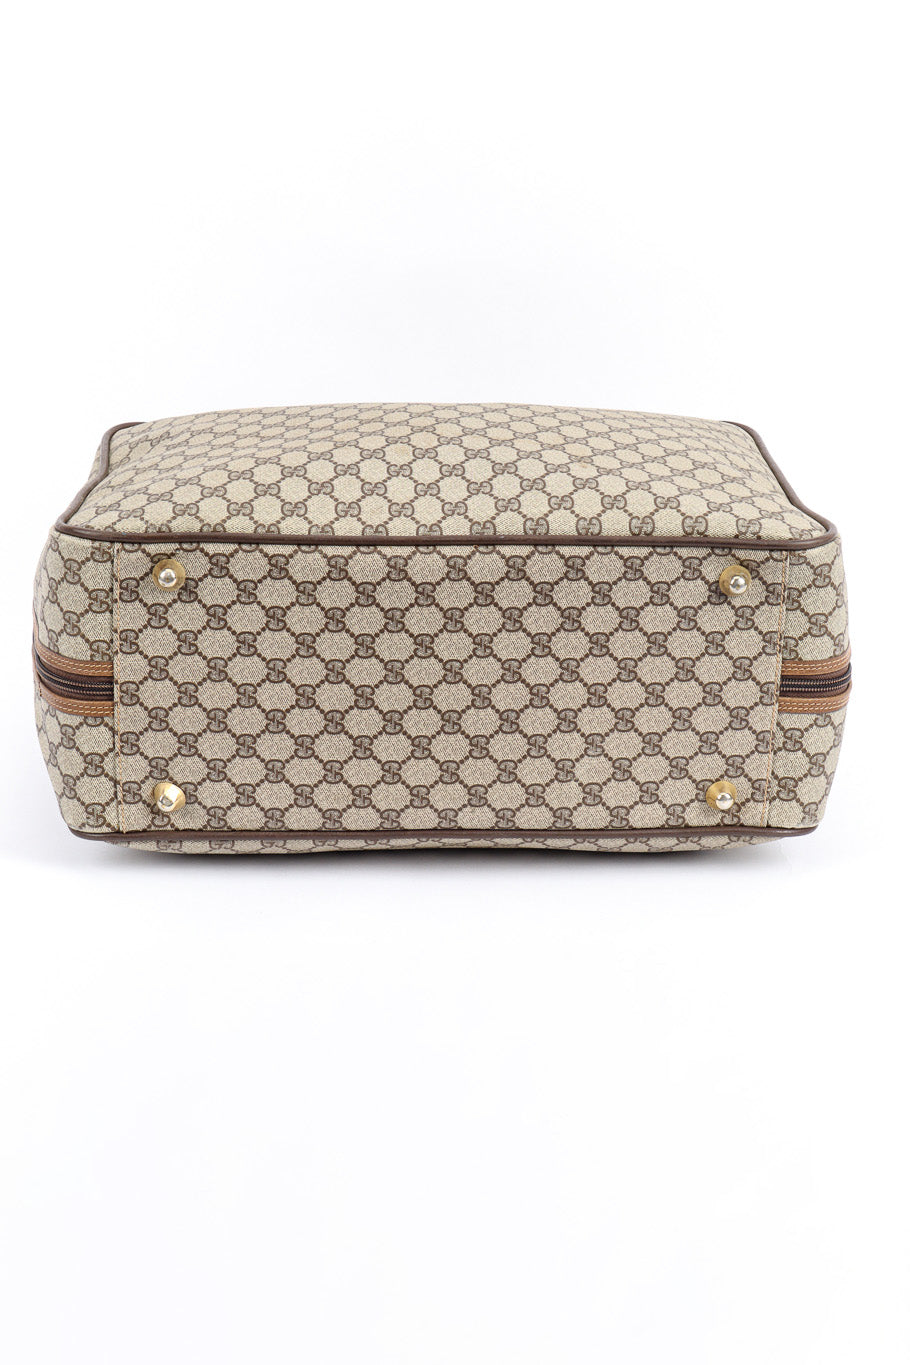 Vintage Gucci Monogram Suitcase bottom @recess la